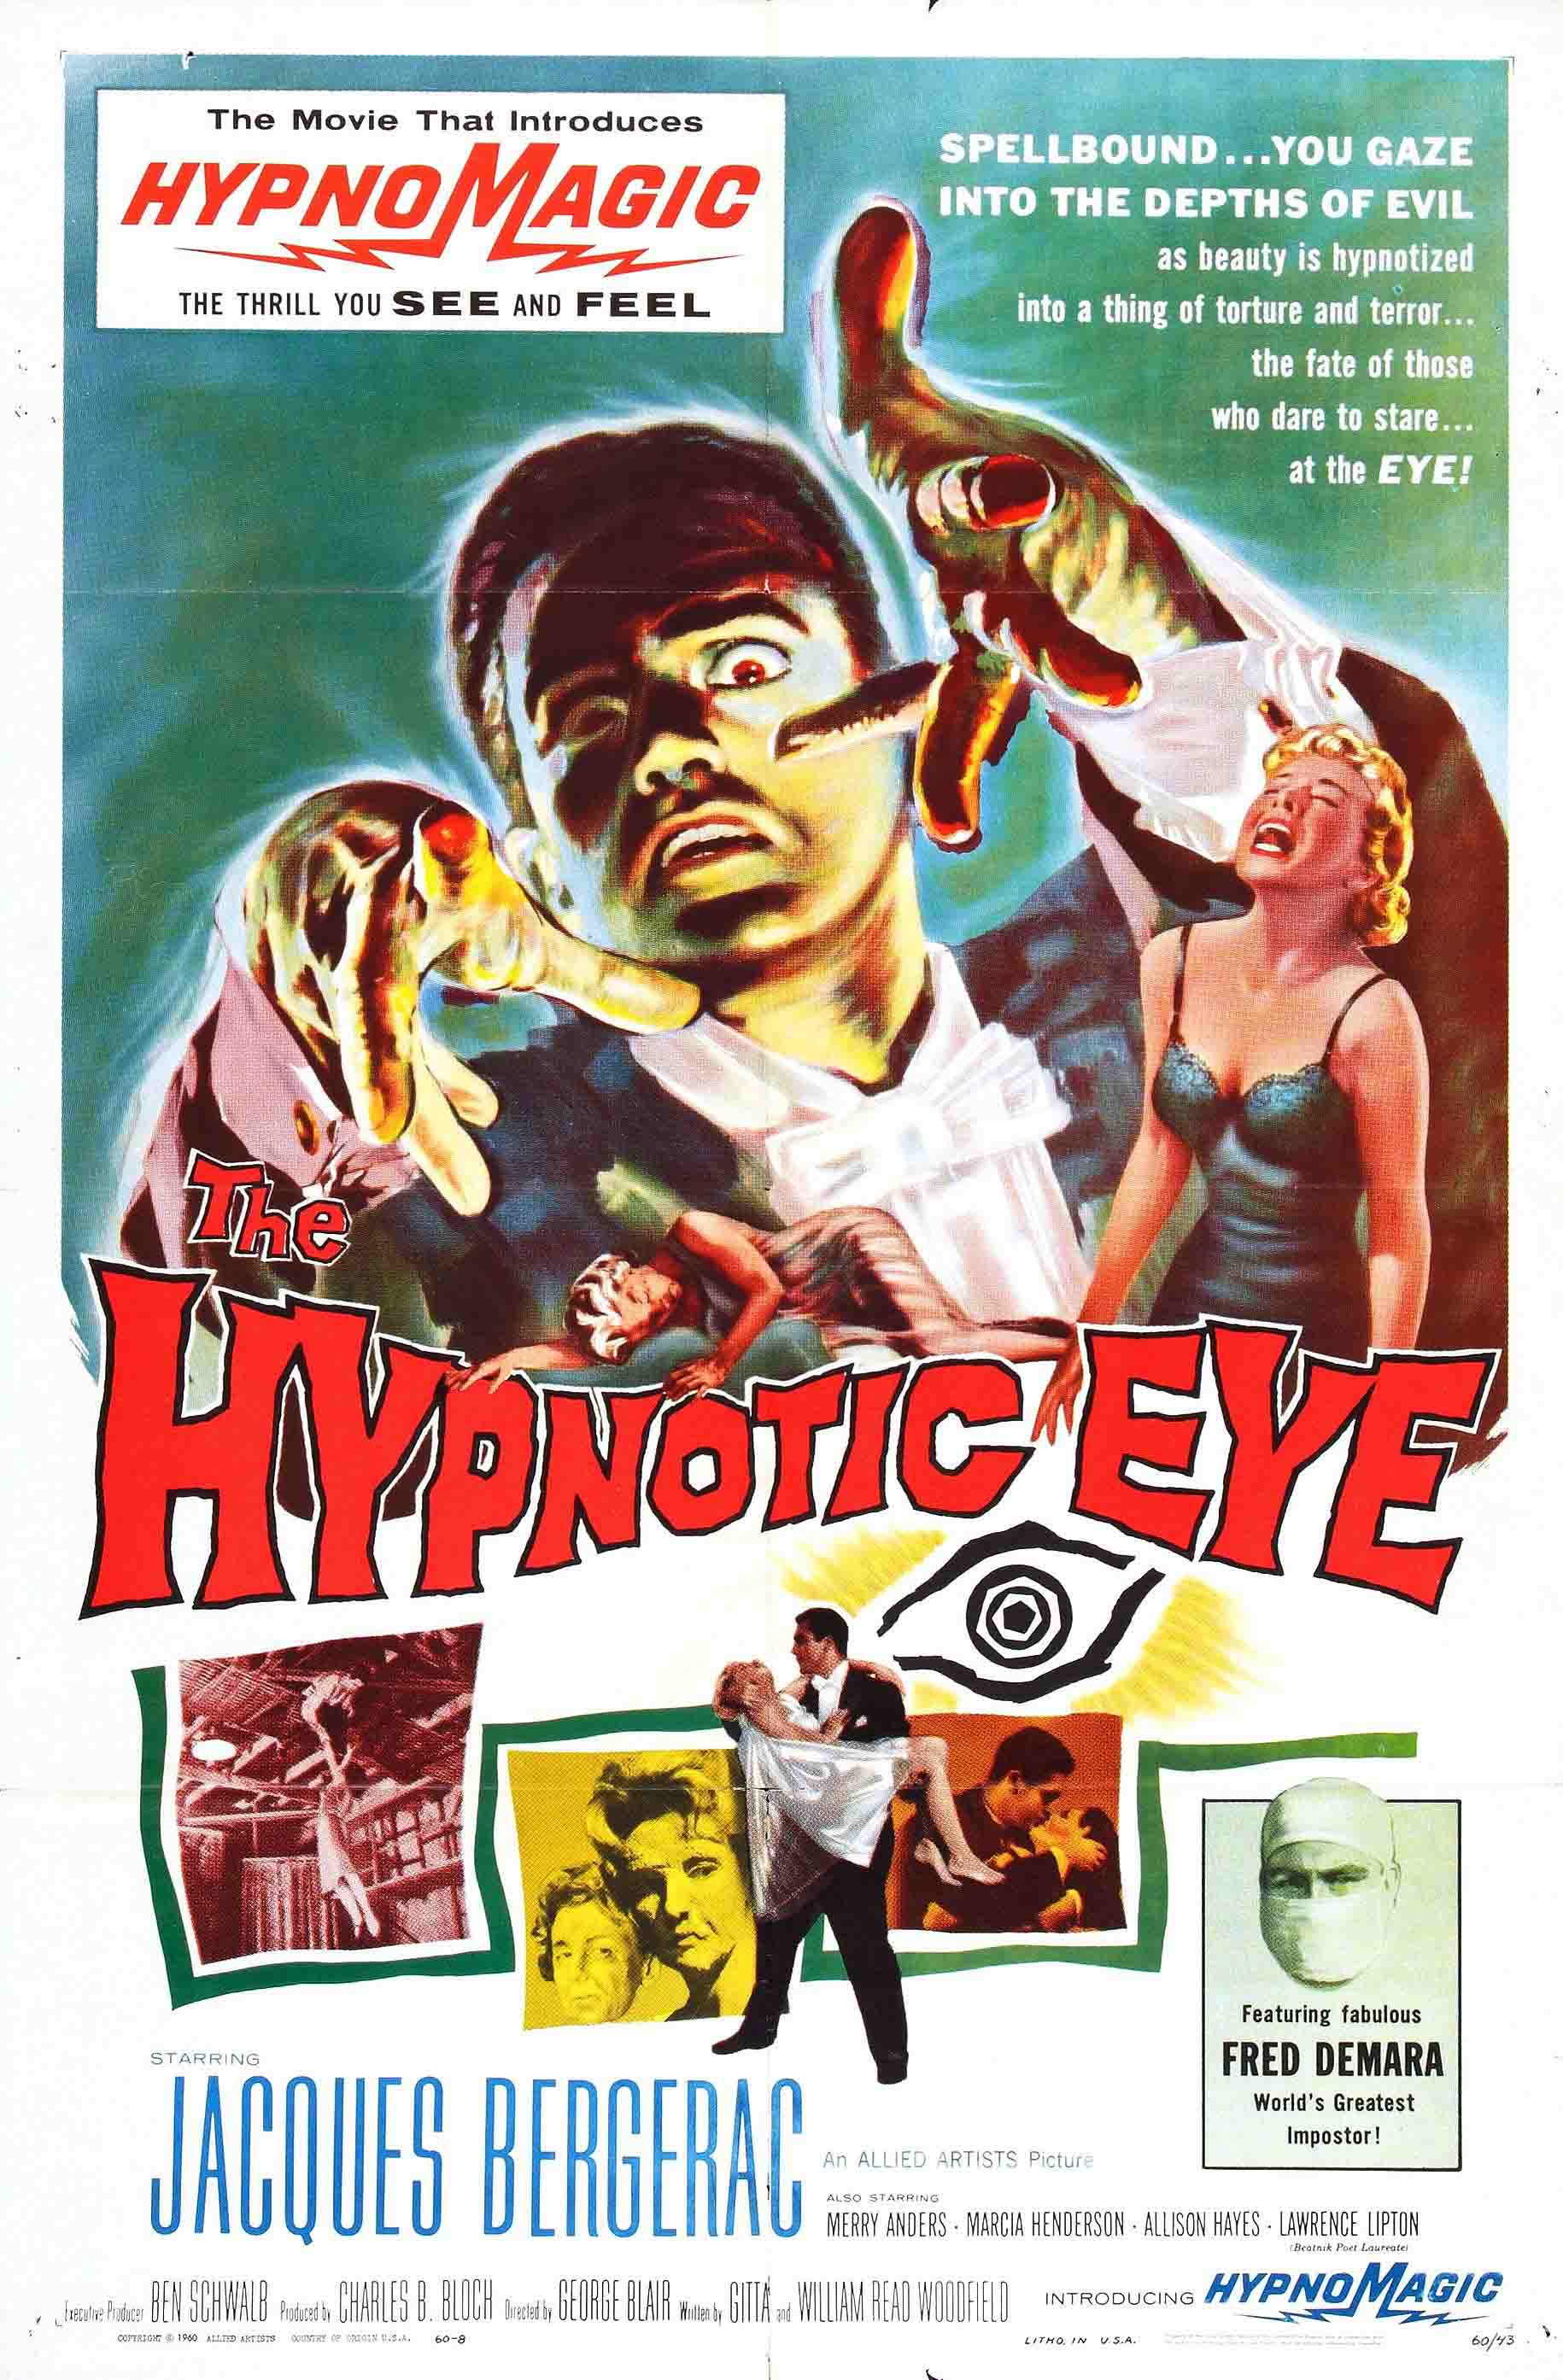 Hypnotic Eye movie poster